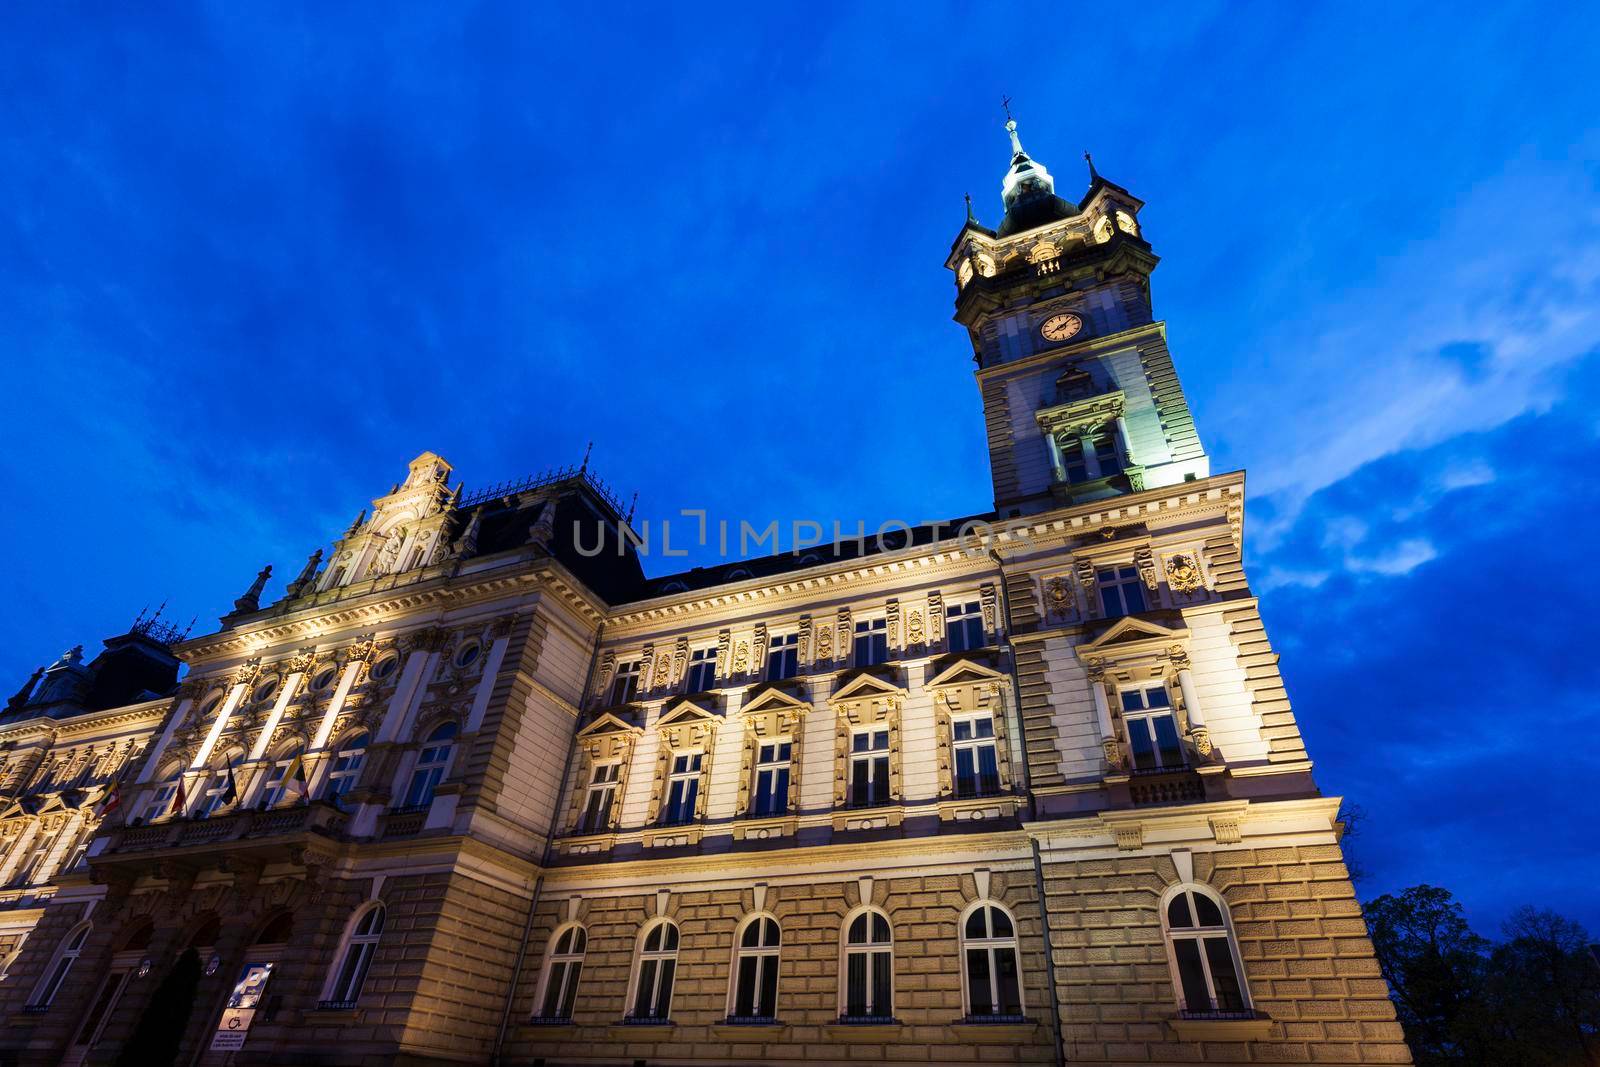 Old city hall in Bielsko-Biala by benkrut